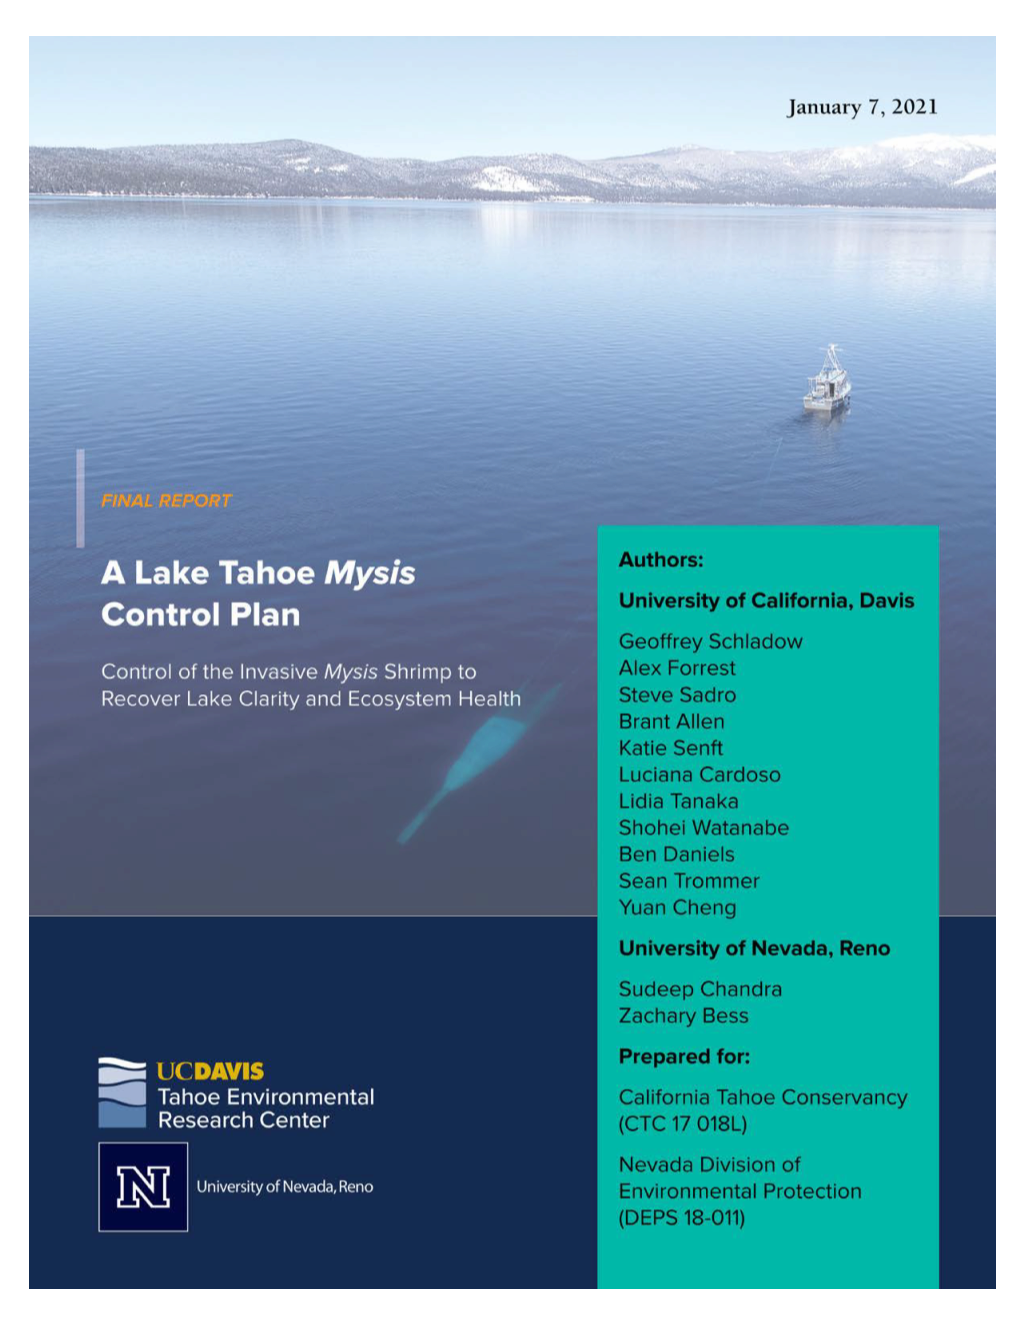 A Lake Tahoe Mysis Control Plan